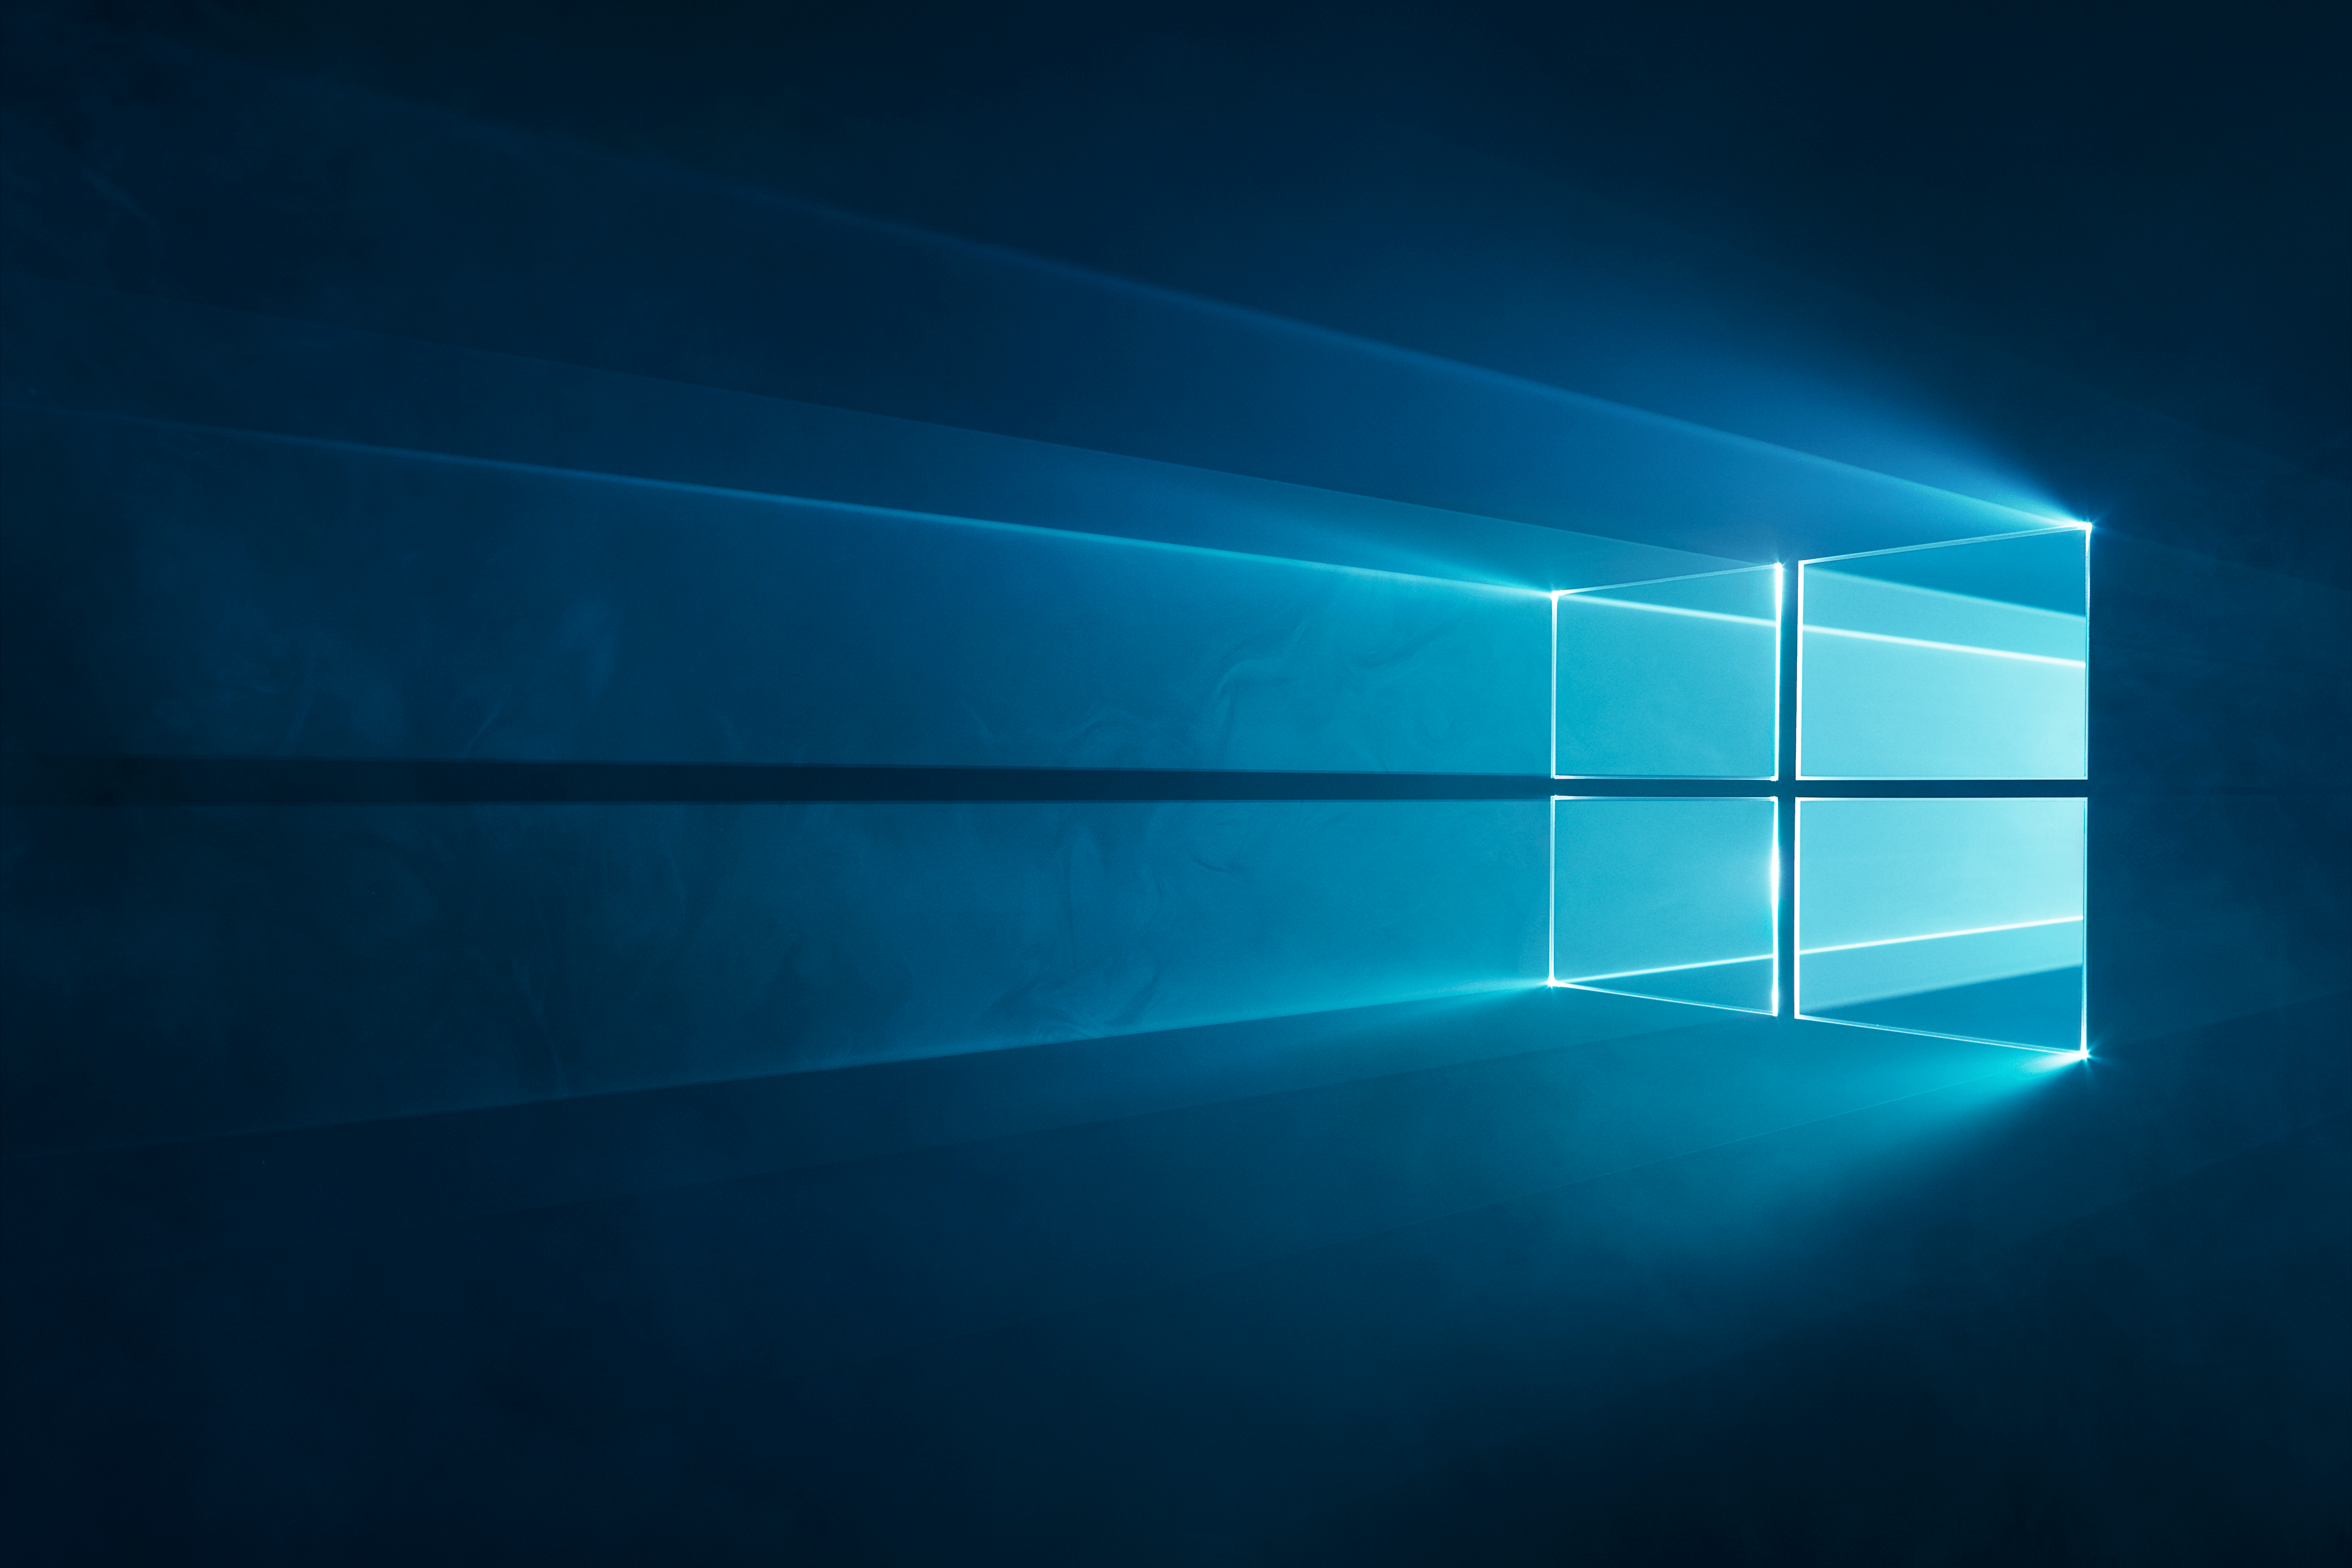 Hình nền Windows 10: Hình nền Windows 10 mới và đầy màu sắc sẽ làm cho màn hình của bạn trở nên sống động, rực rỡ hơn bao giờ hết. Từ những bức tranh tuyệt đẹp đến những hình ảnh sinh động, những tùy chọn hình nền của Windows 10 sẽ làm cho bạn đắm mình trong một thế giới đẹp như mơ.